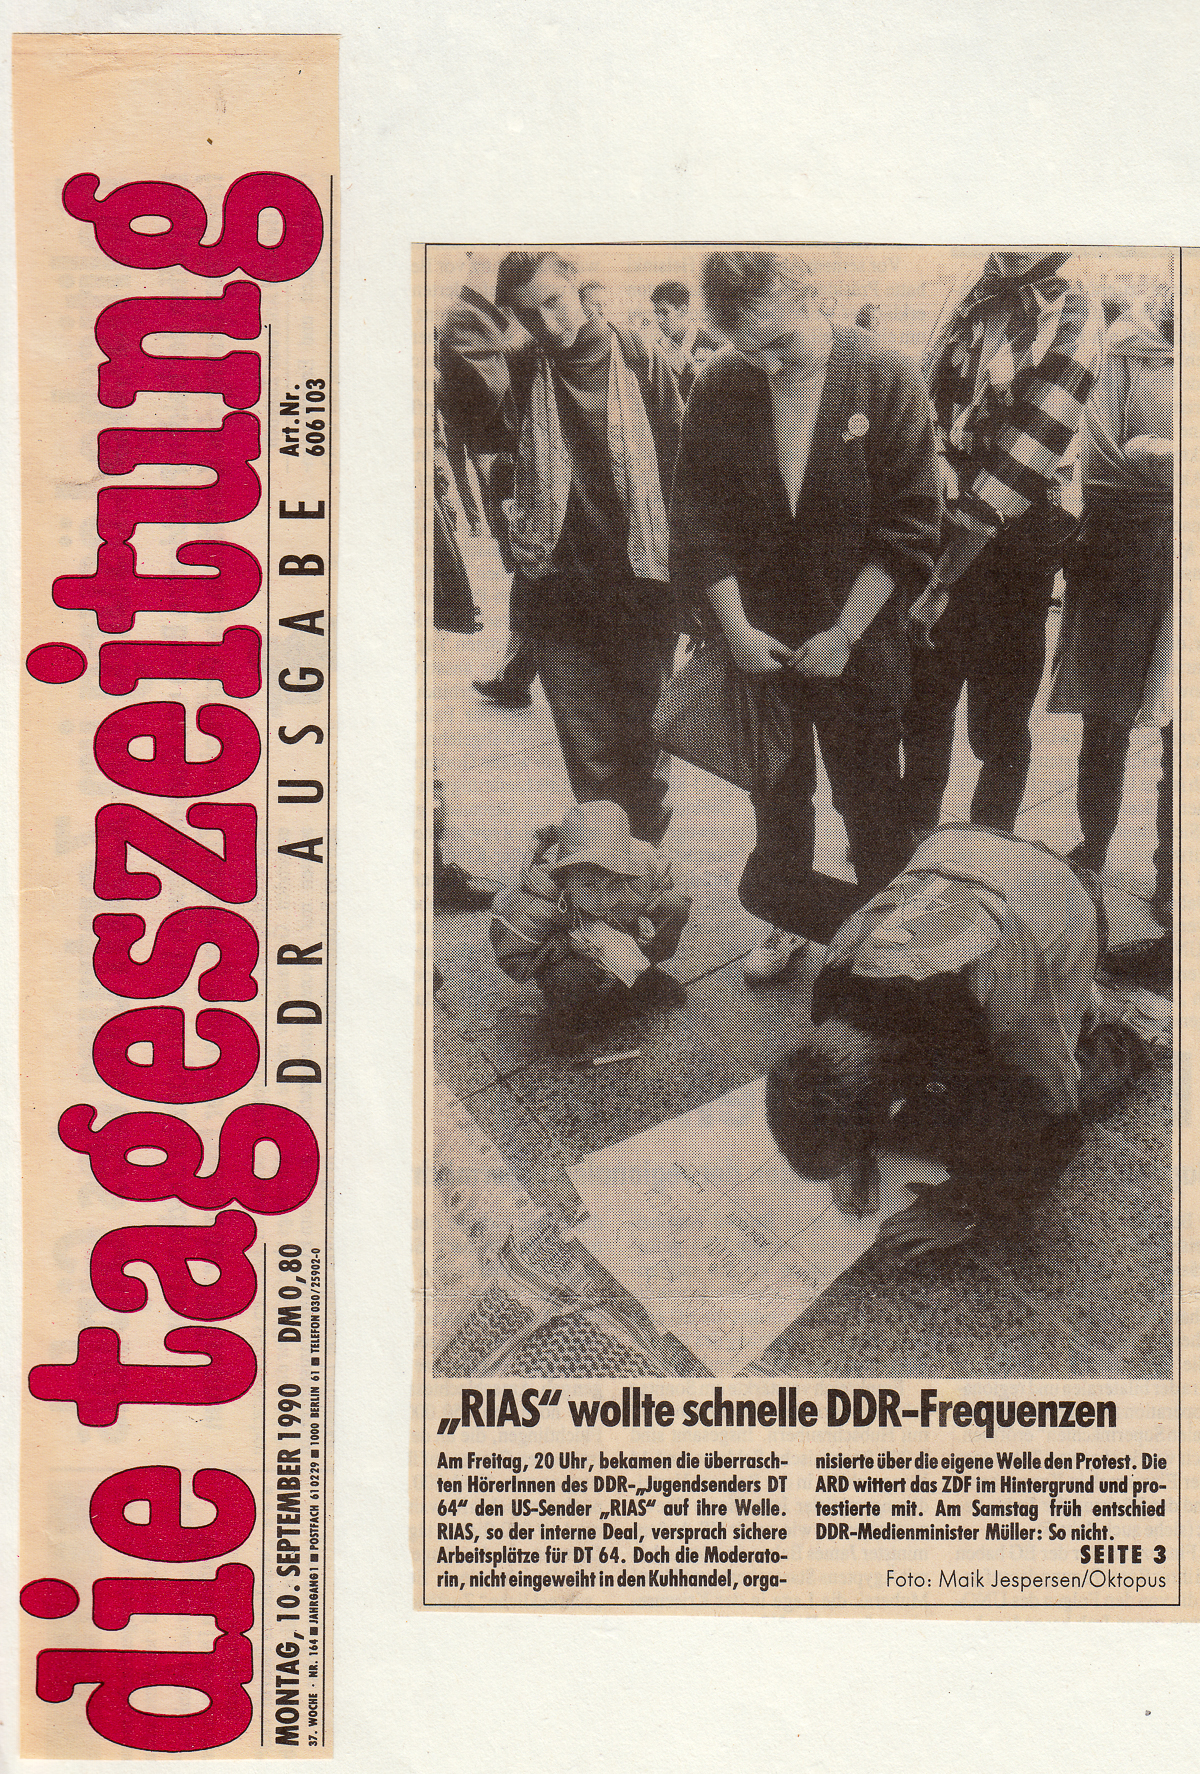 Die tageszeitung "taz", 10.09.1990